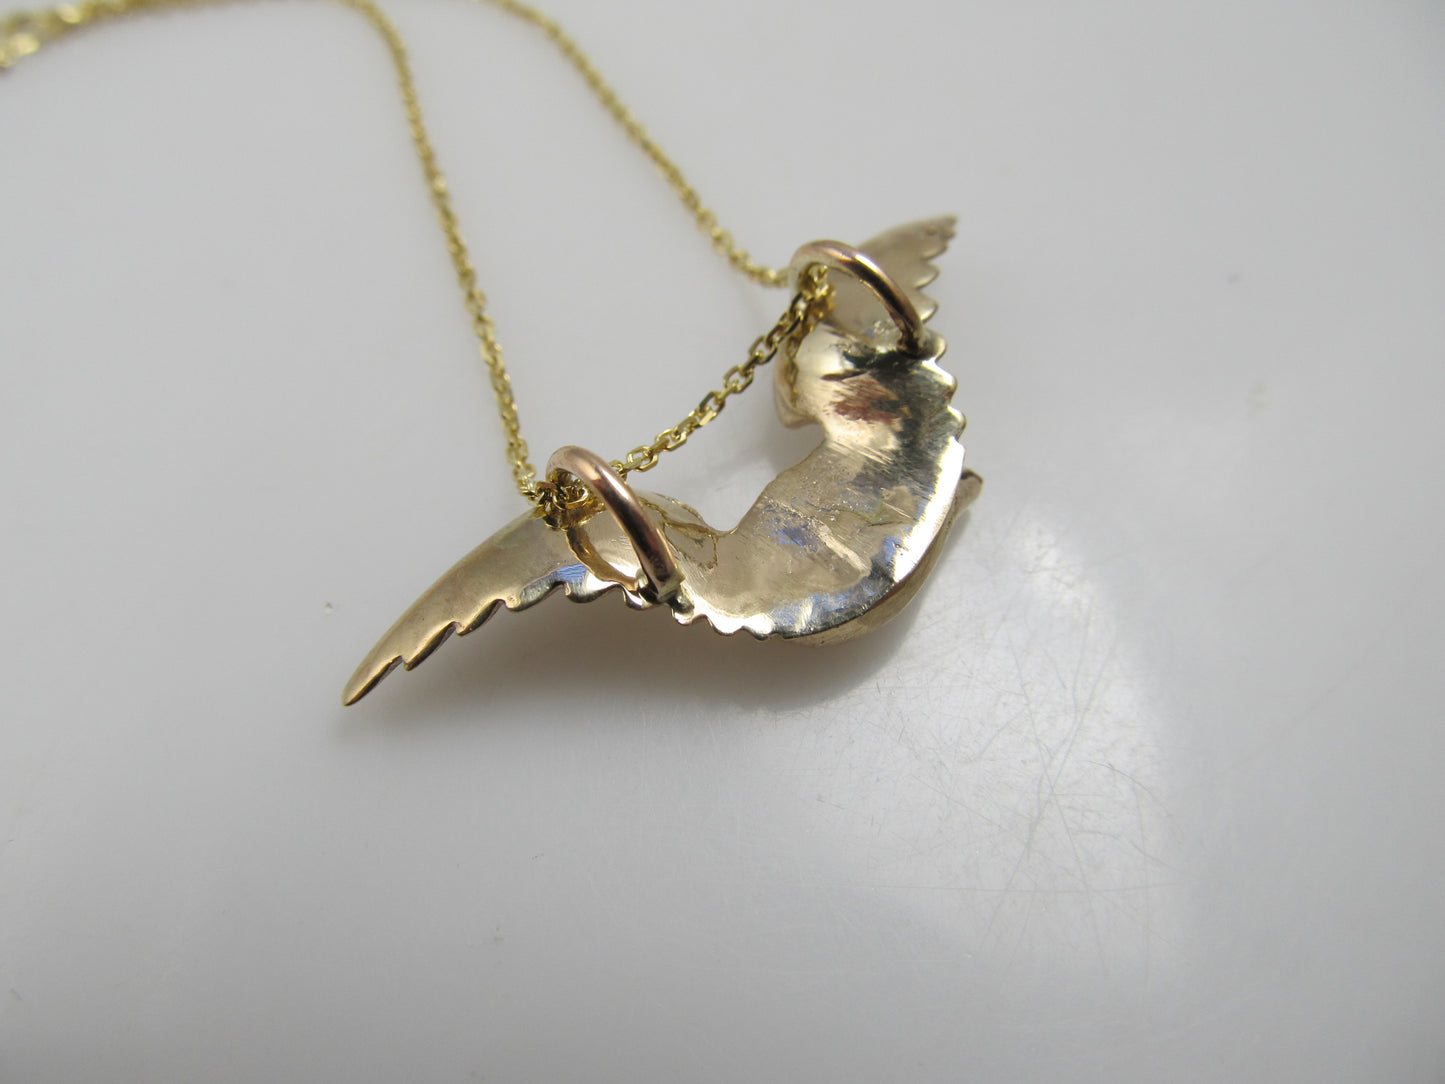 14k rose gold eagle necklace with a diamond eye, circa 1900.